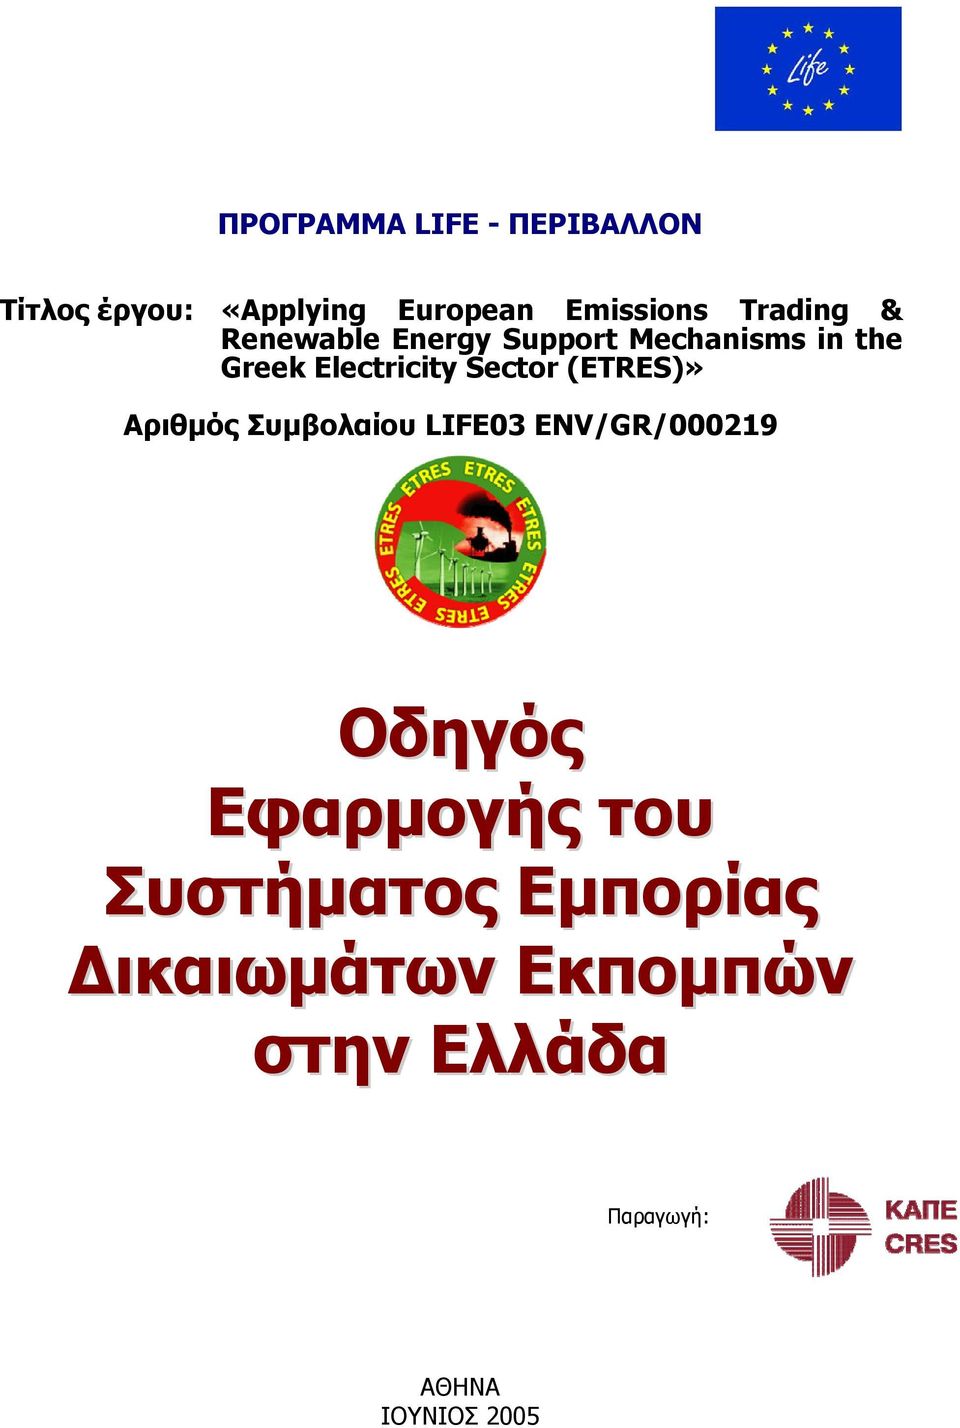 Συμβολαίου LIFE03 ENV/GR/000219 Οδηγός Εφαρμογής του Συστήματος Εμπορίας Δικαιωμάτων